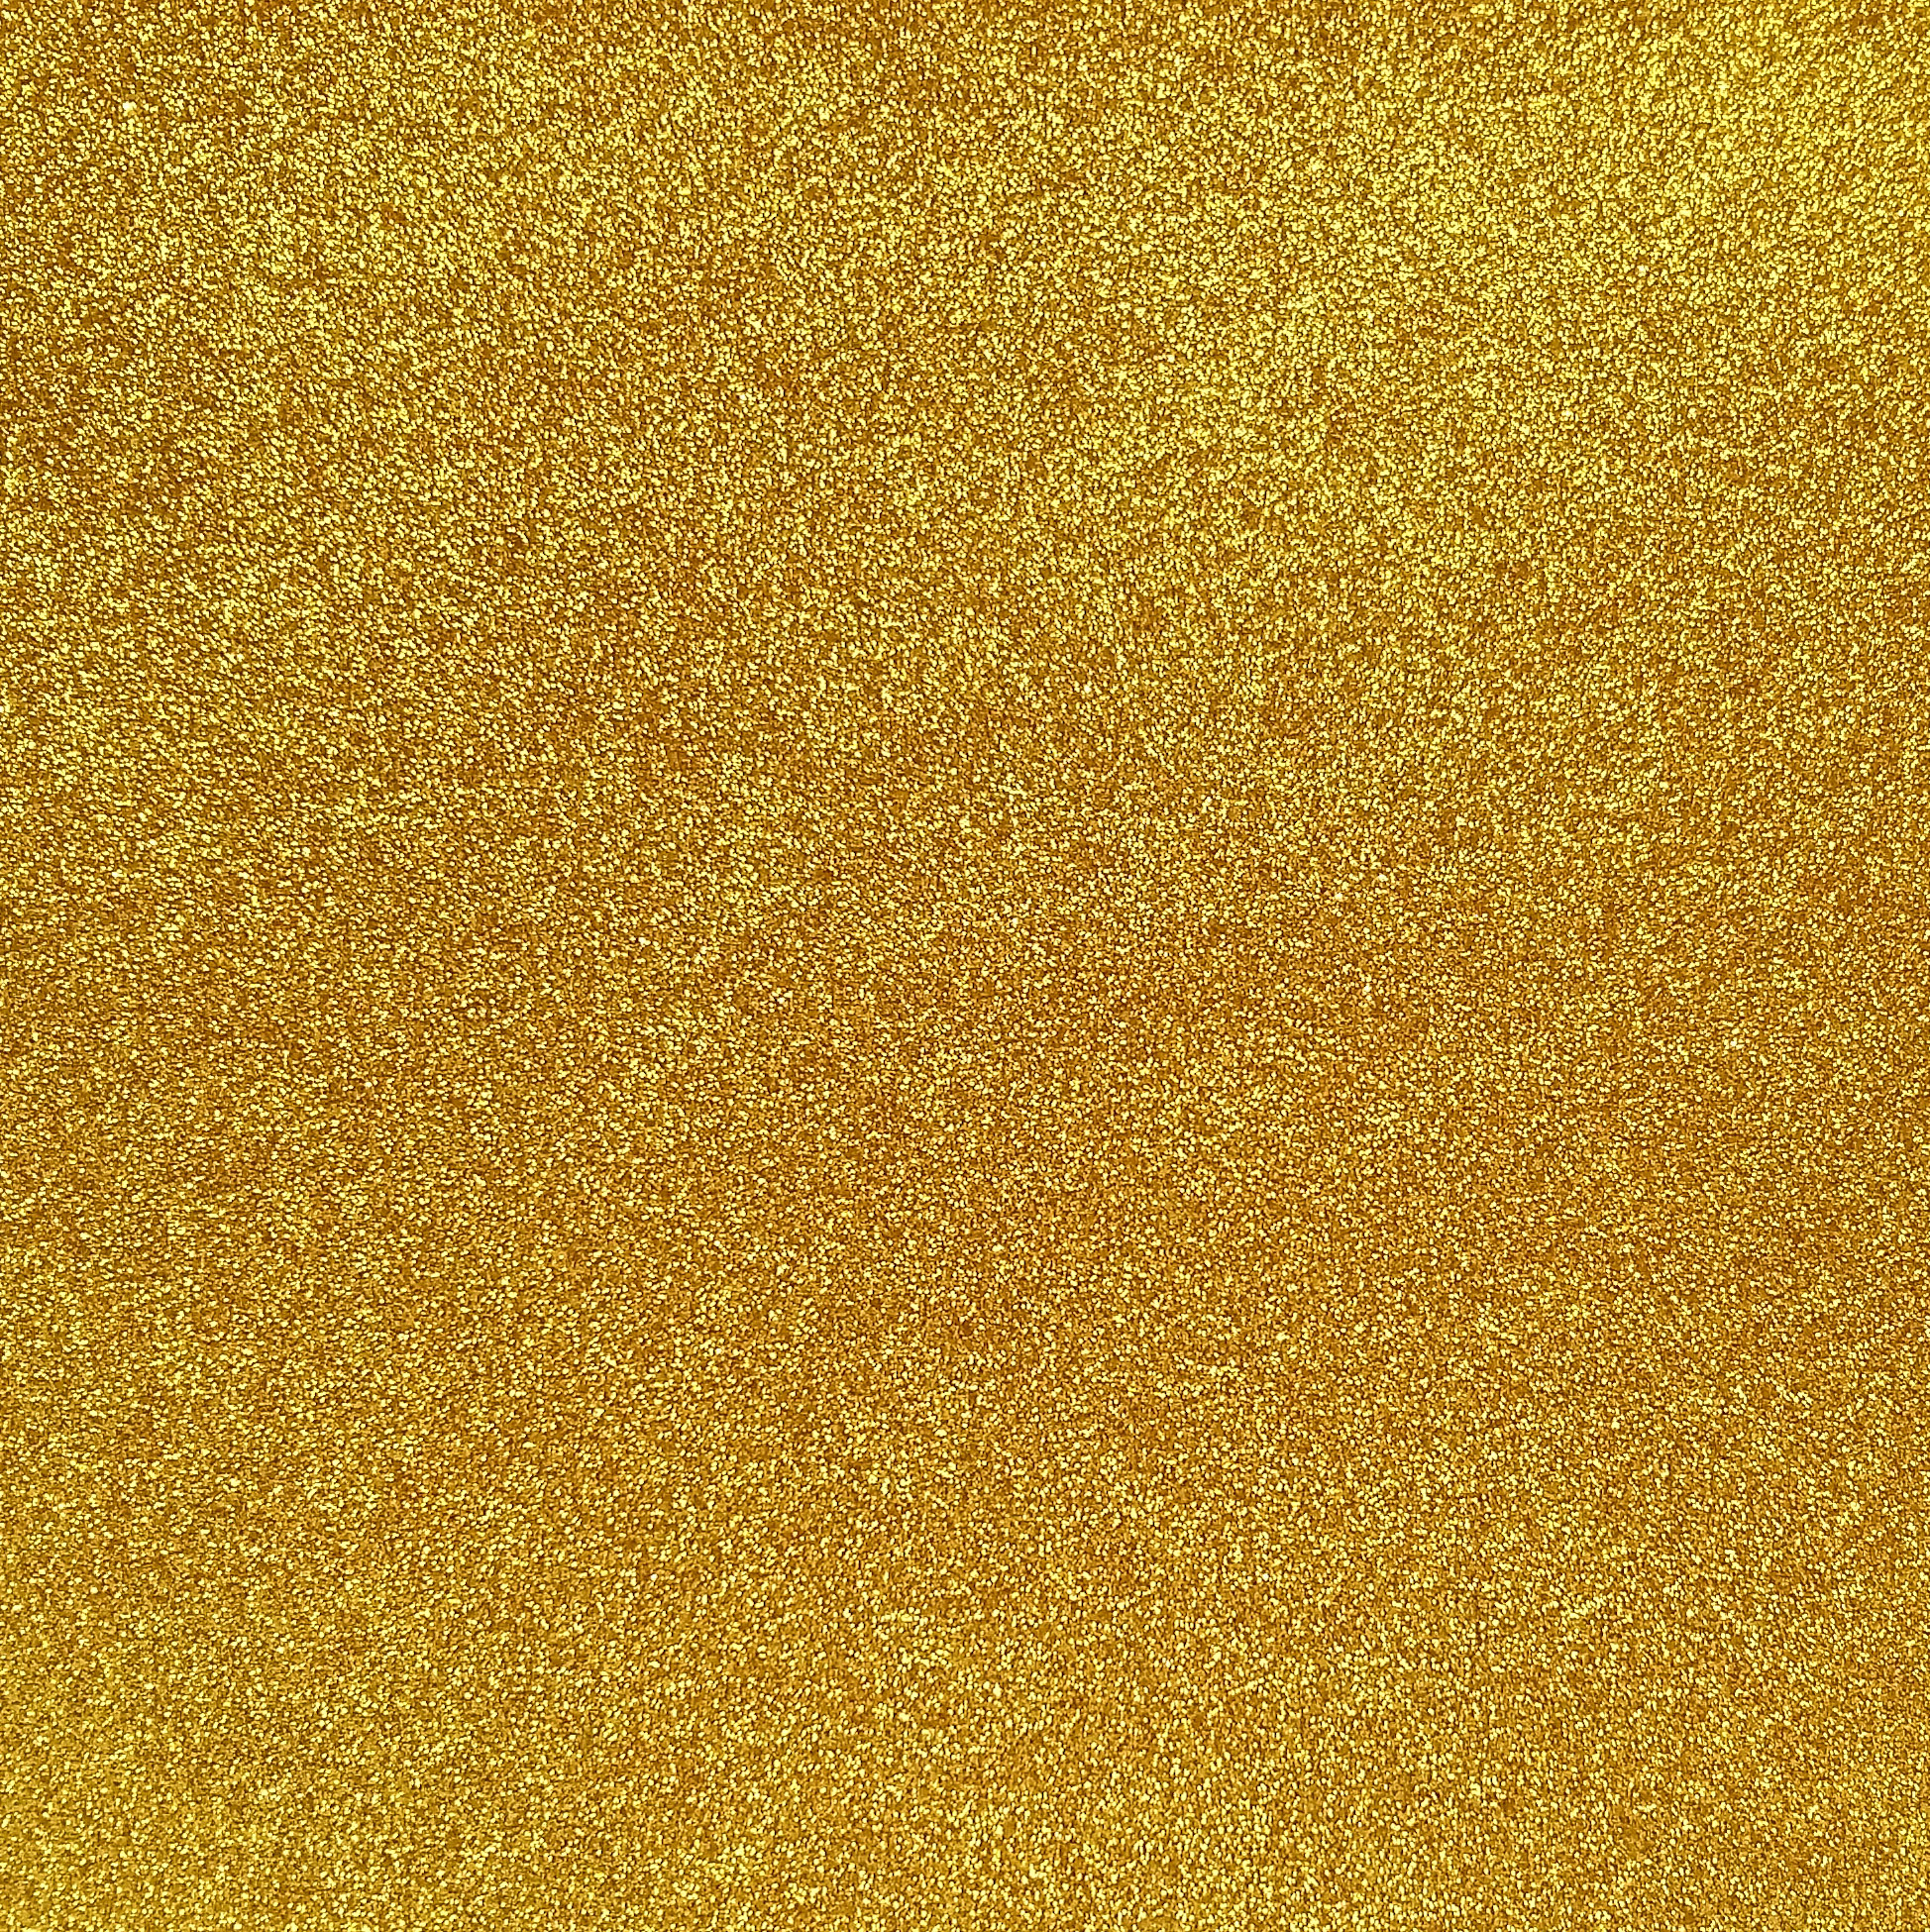 Gold glitter photo